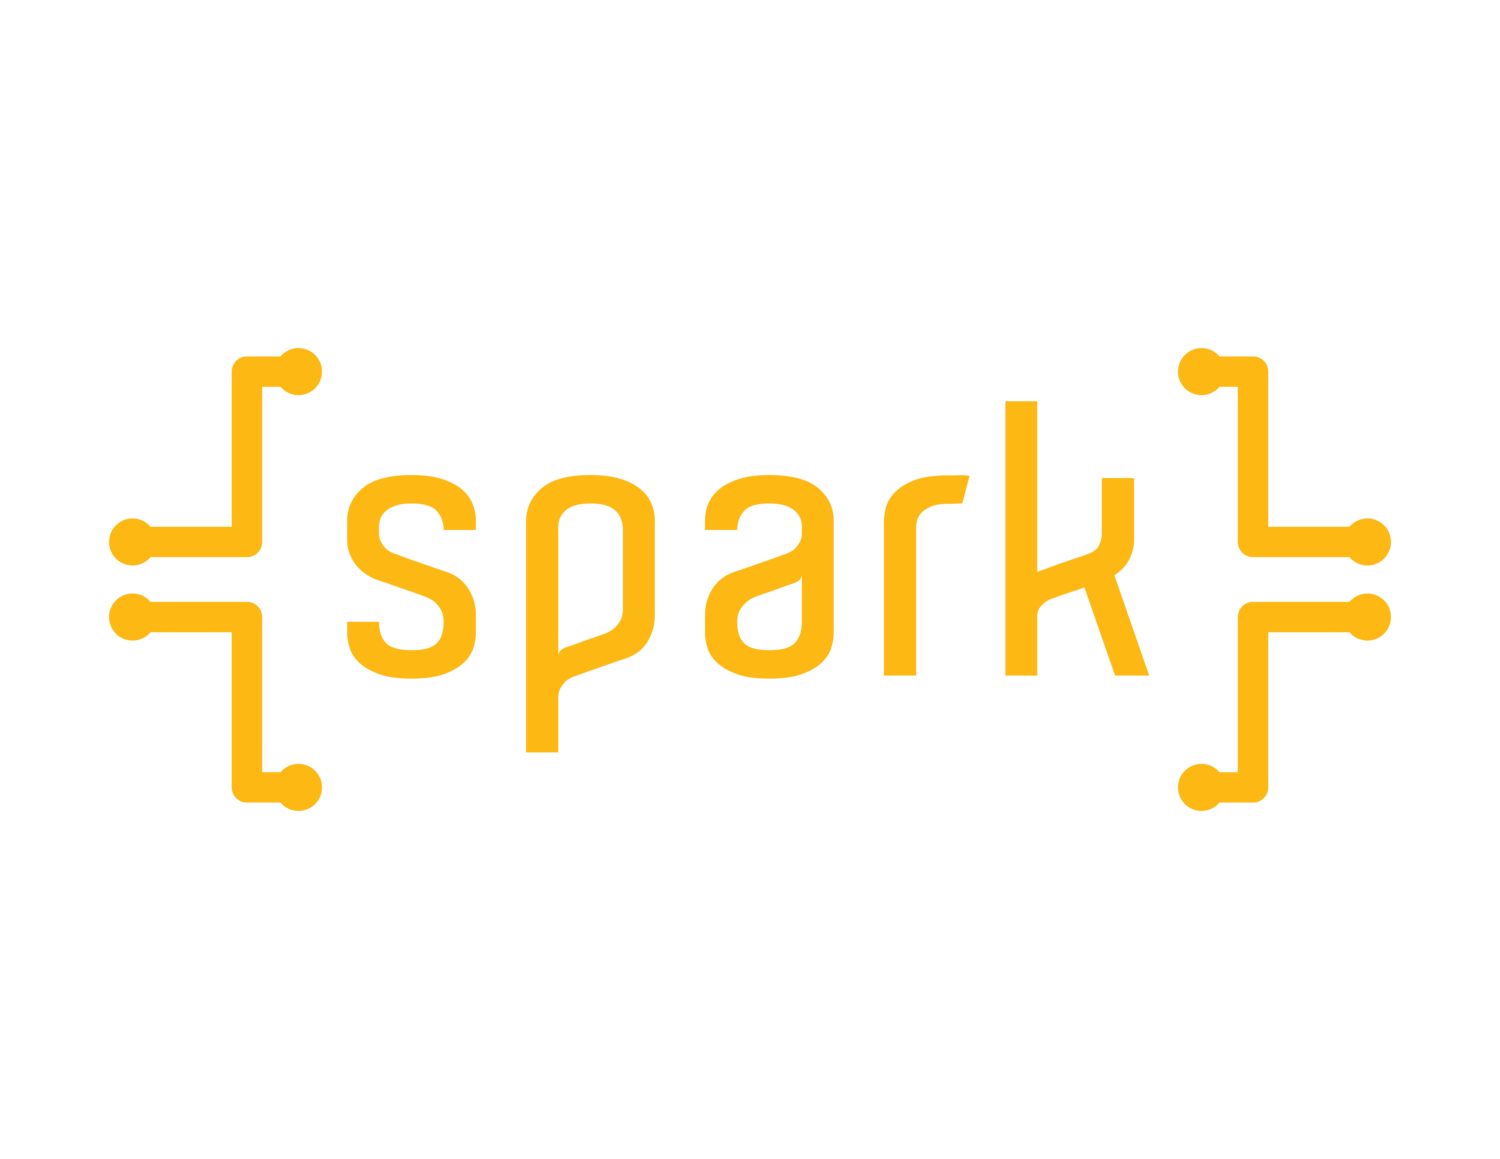 spark_logo_transparent_yellow.png